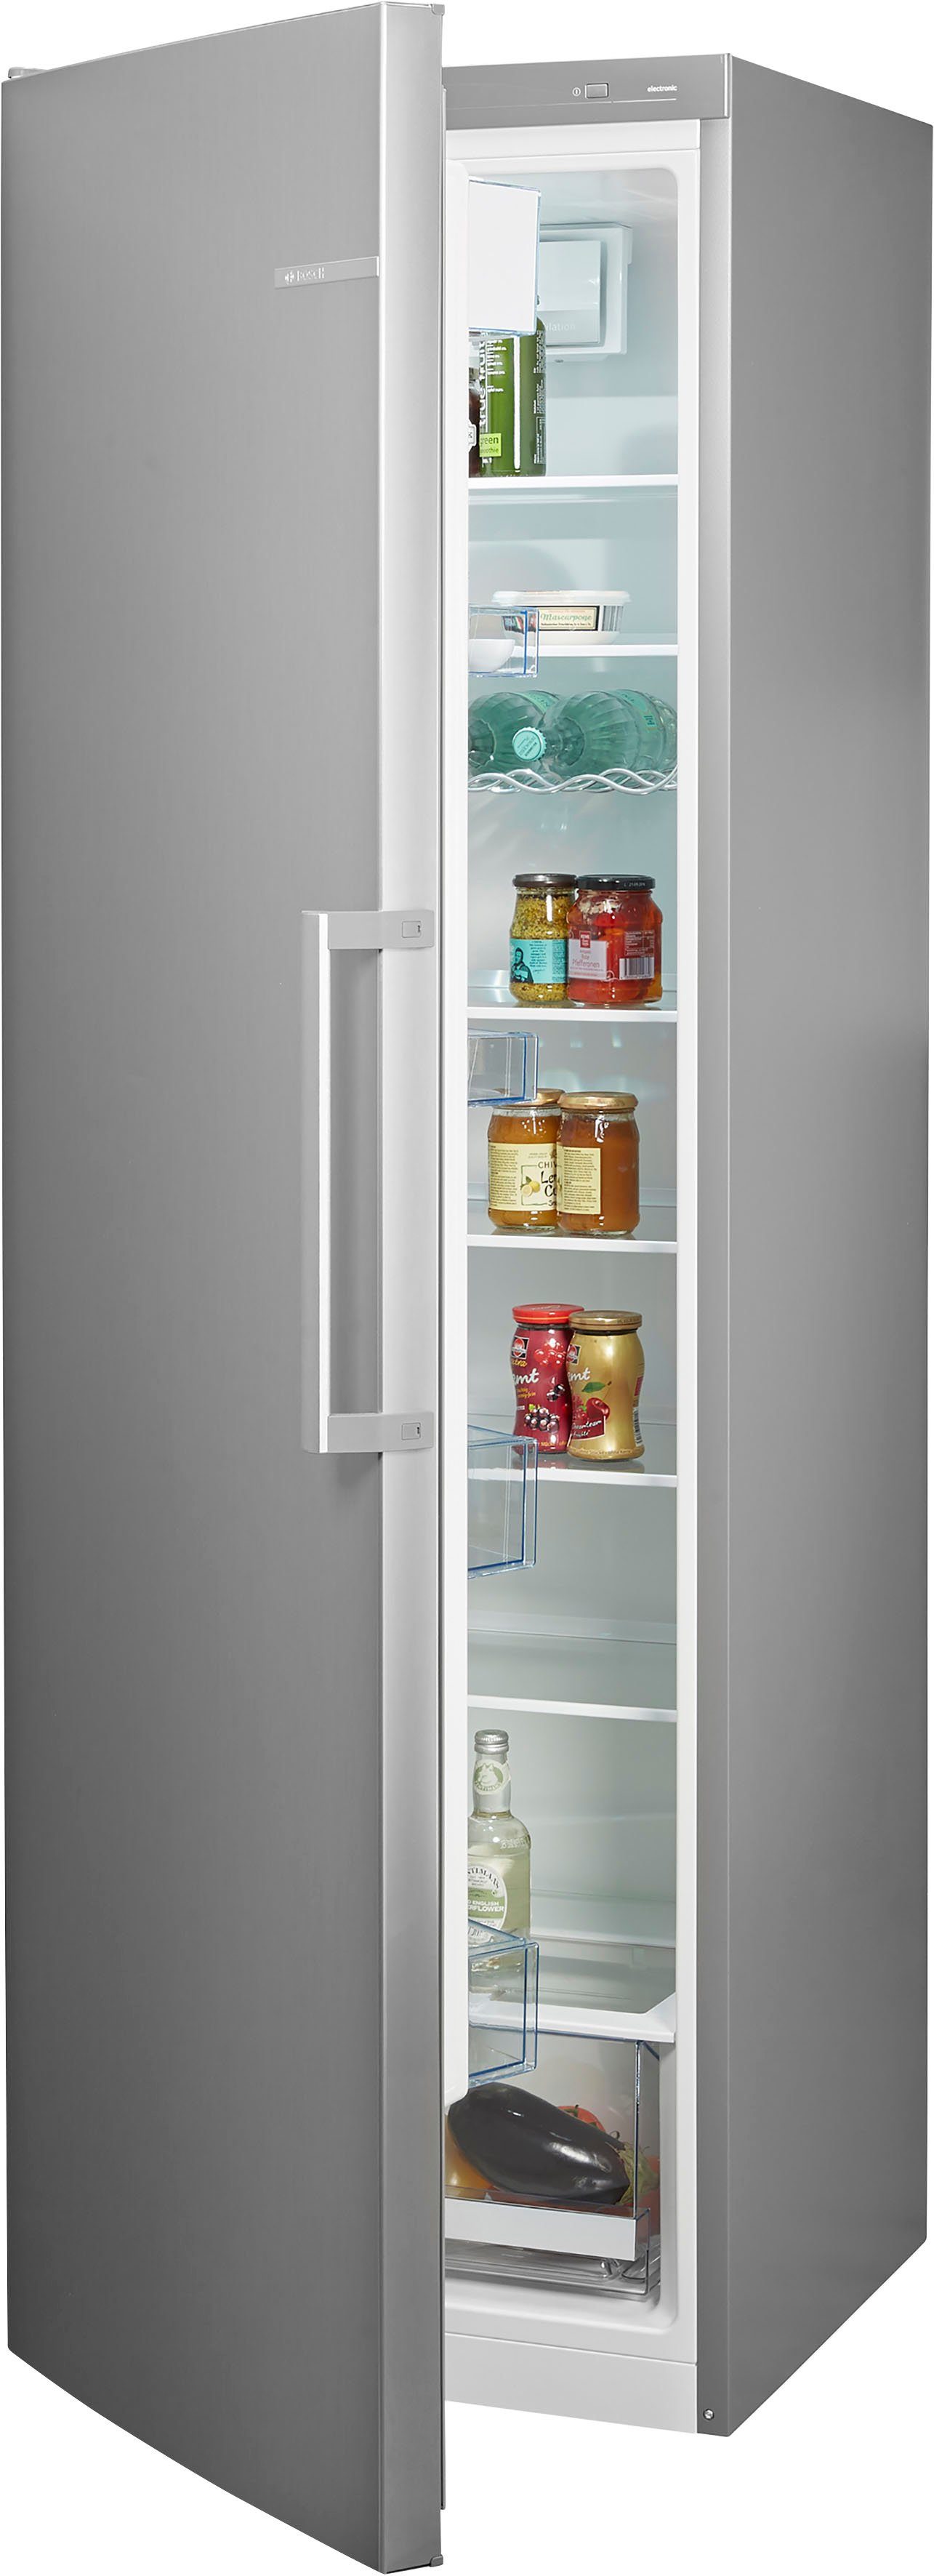 Standkühlschrank online kaufen » Altgeräte-Mitnahme | OTTO